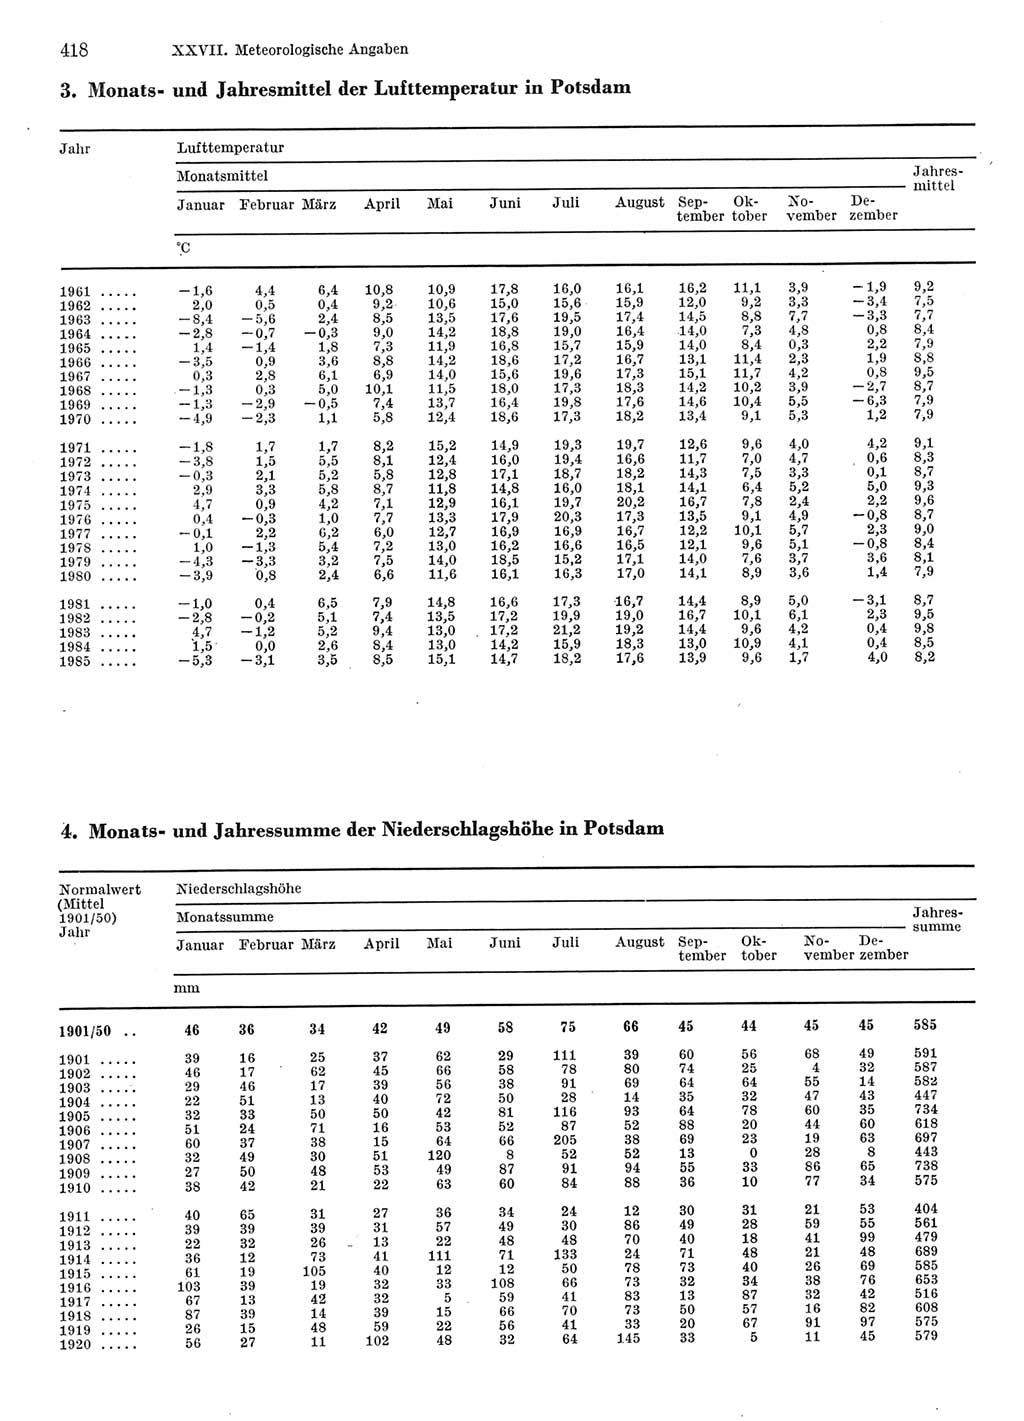 Statistisches Jahrbuch der Deutschen Demokratischen Republik (DDR) 1986, Seite 418 (Stat. Jb. DDR 1986, S. 418)